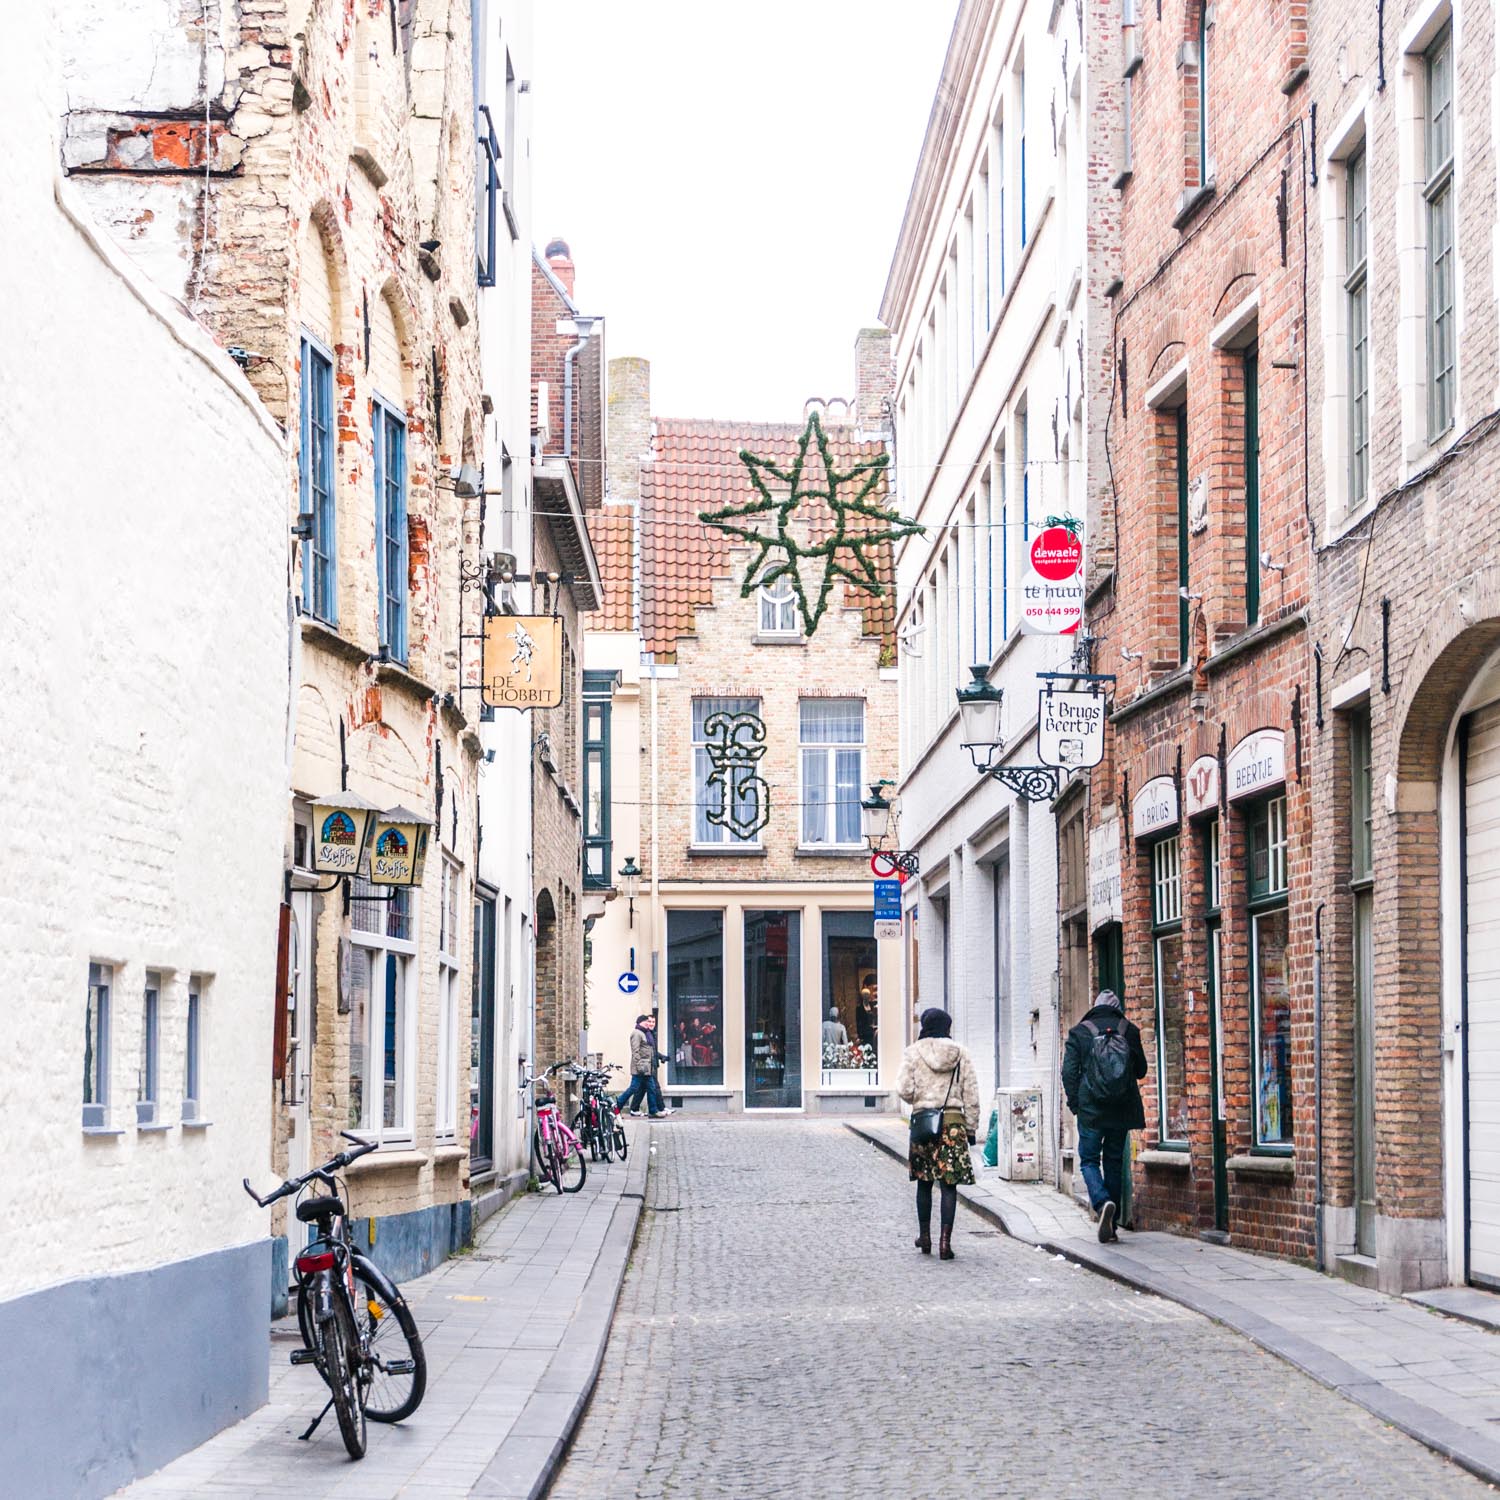 Christmas in Europe – Brussels > Brugge > Brussels